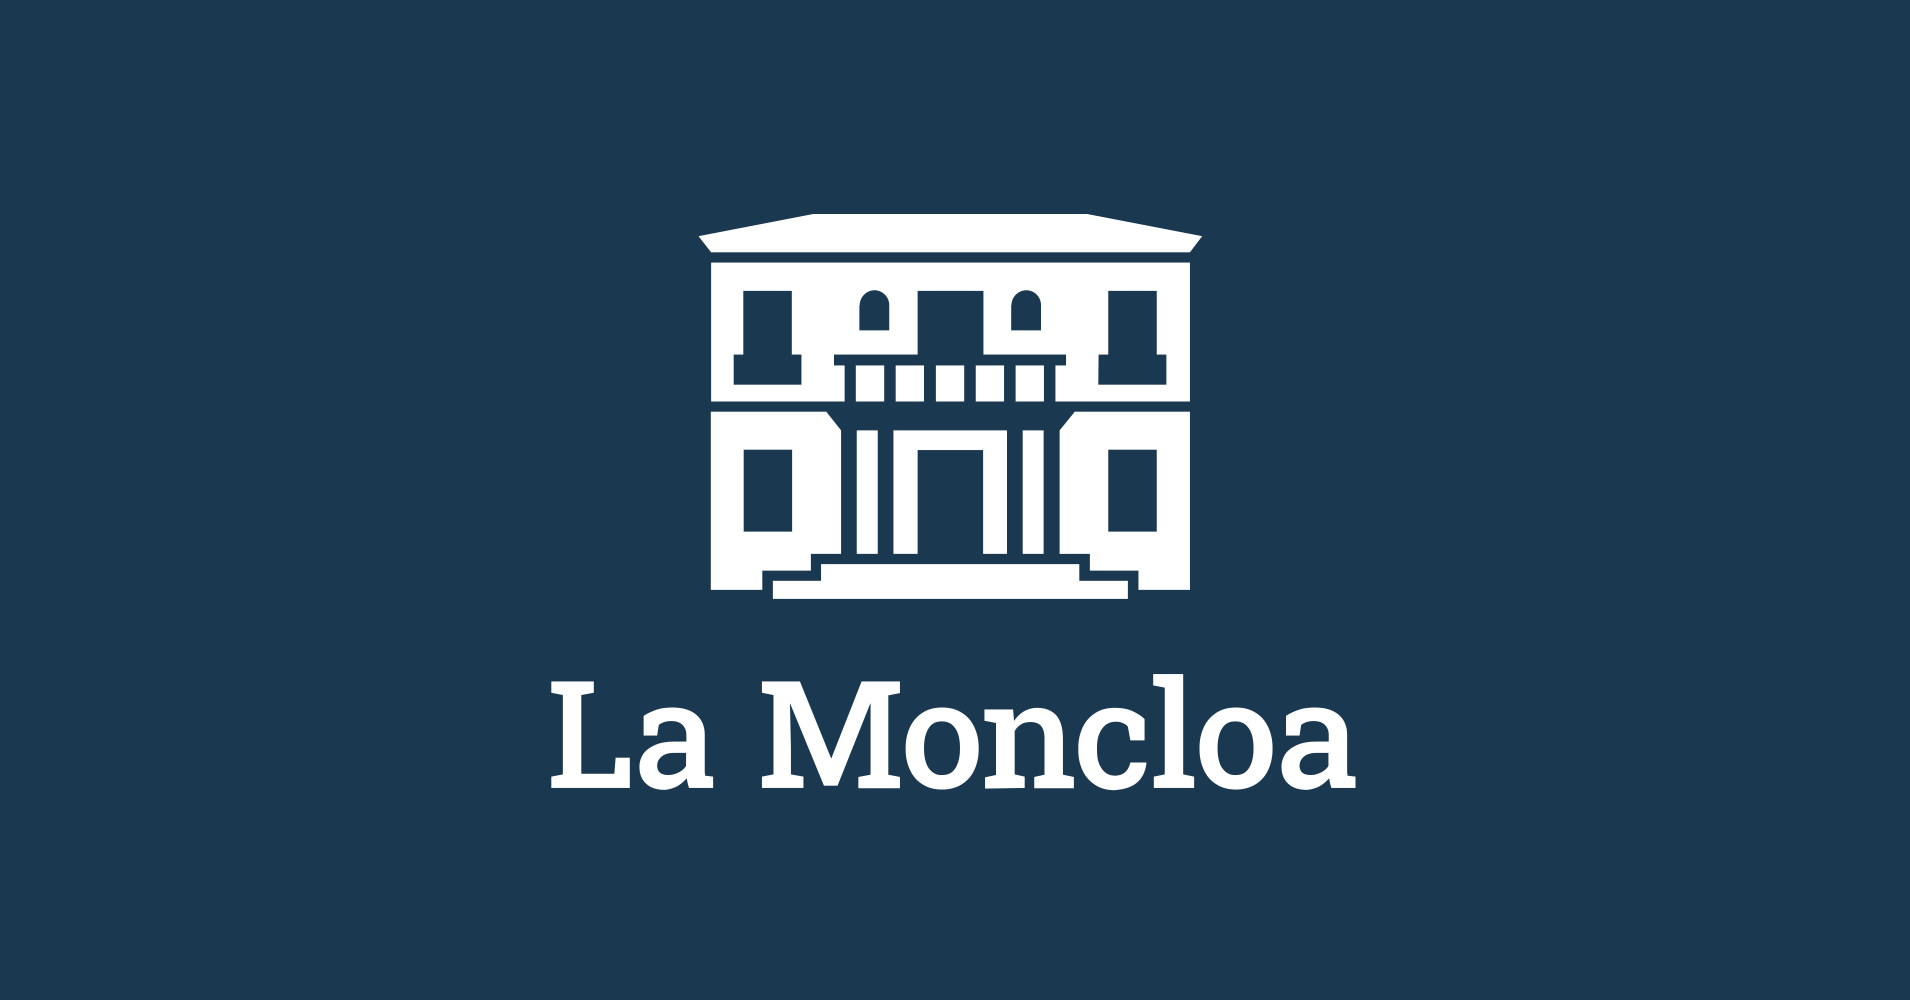 www.lamoncloa.gob.es